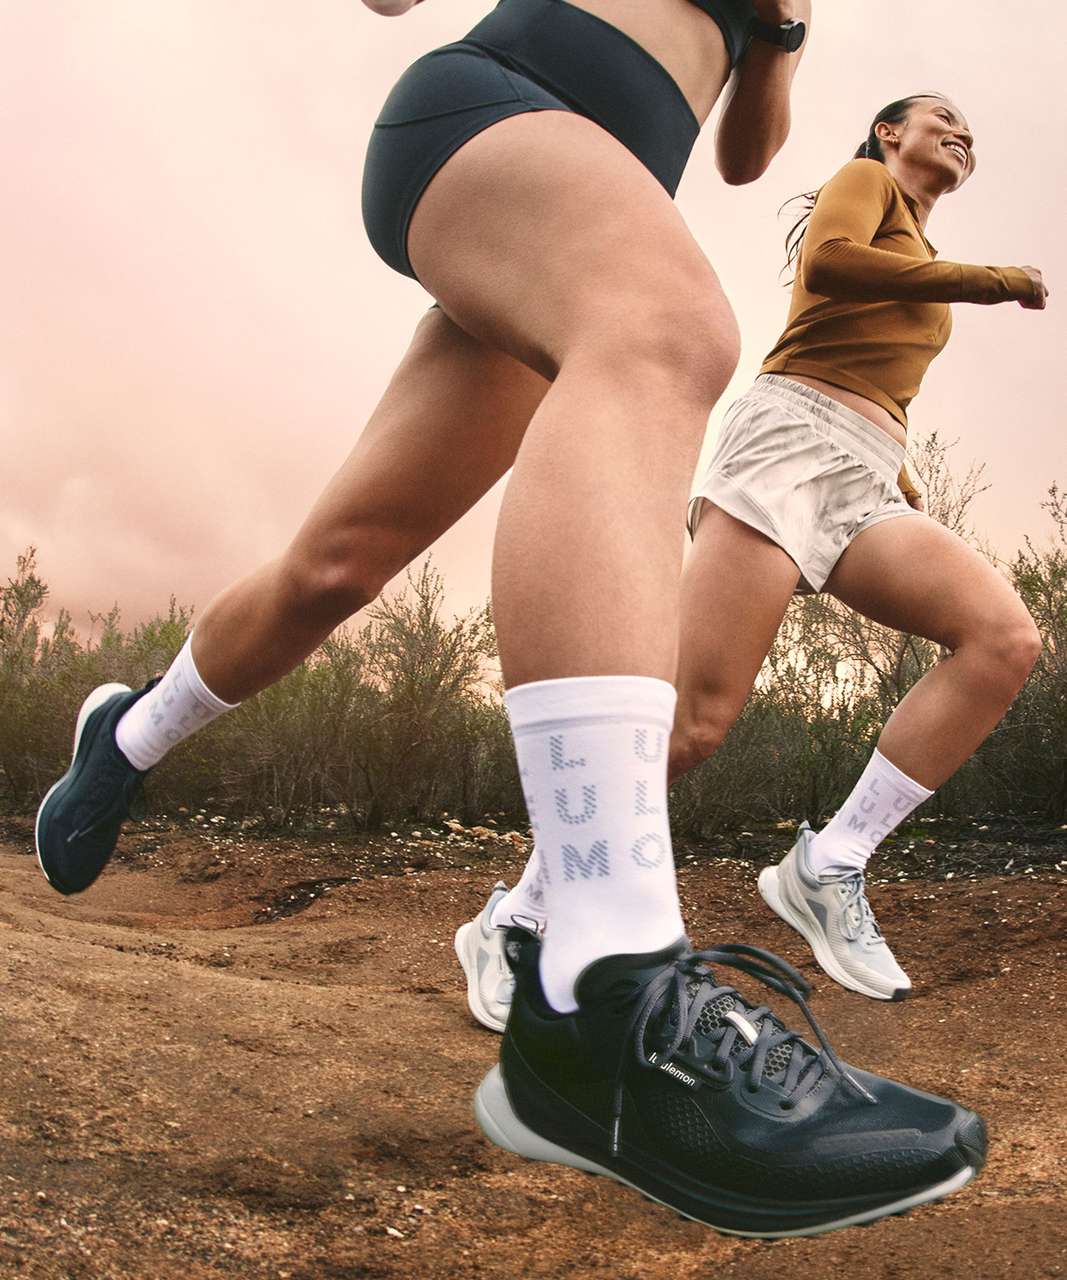 Lululemon + Blissfeel Trail Women’s Running Shoe